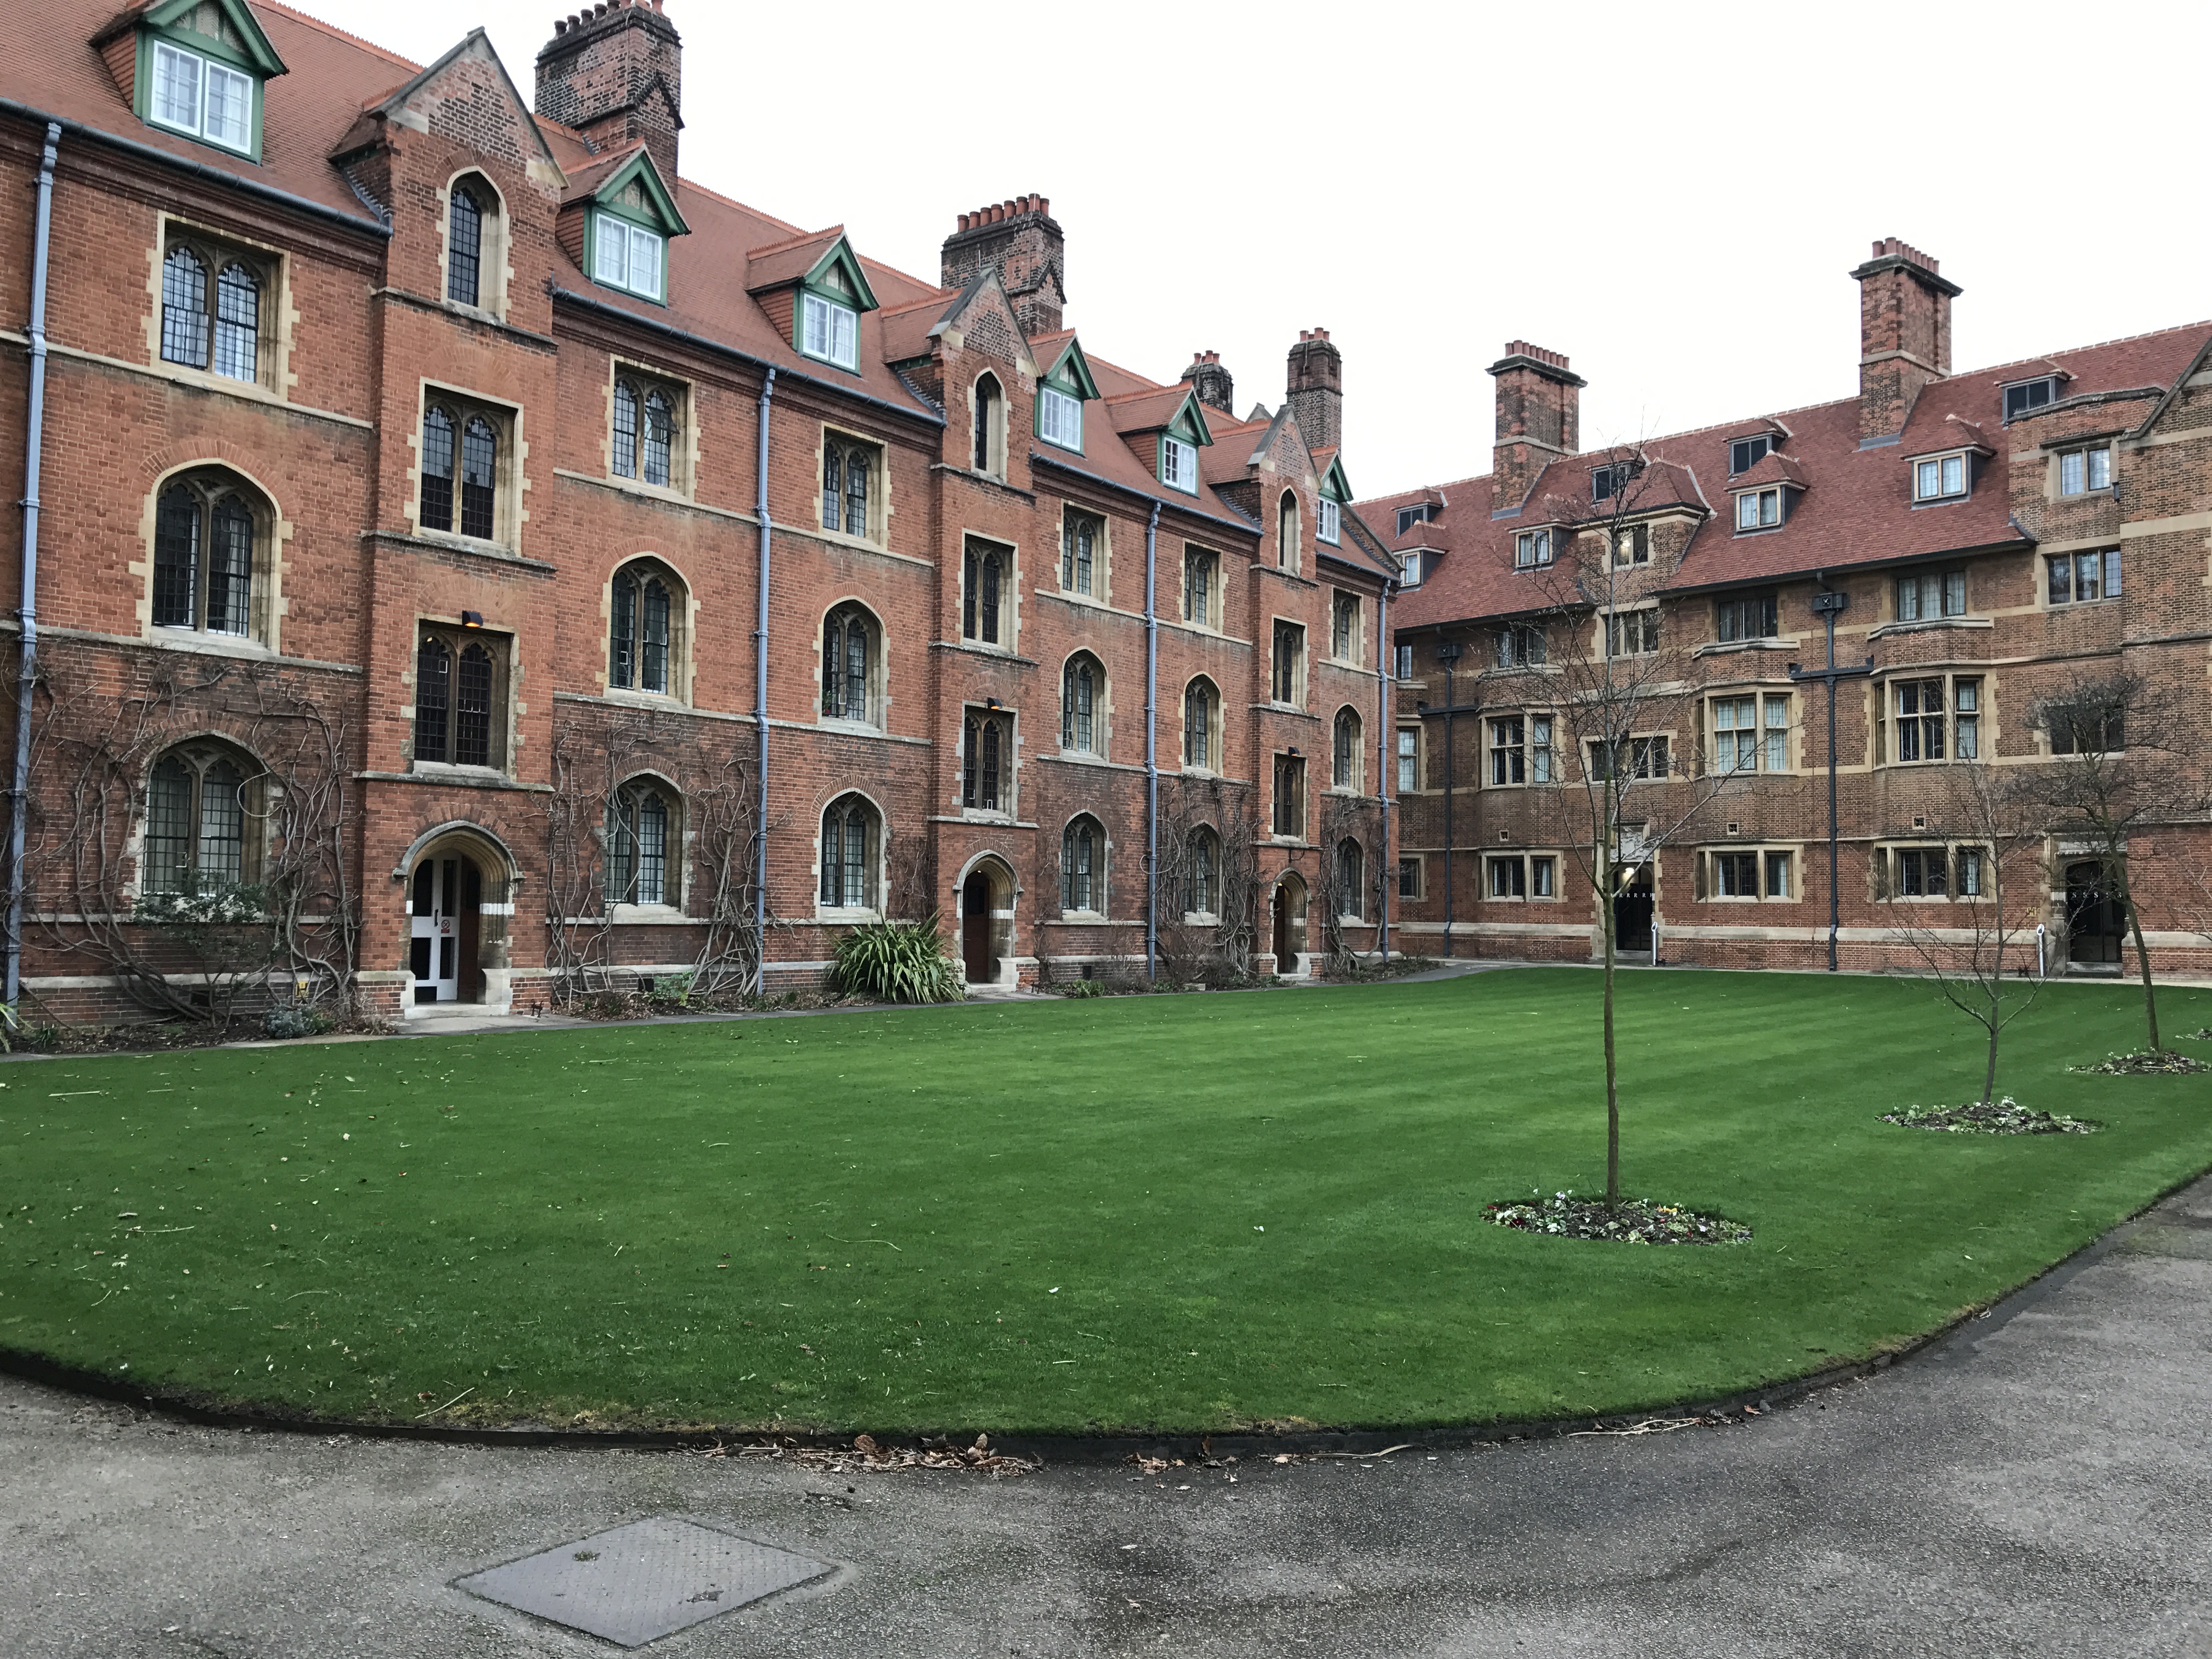 Je bekijkt nu Cambridge, Engeland – Deel 2